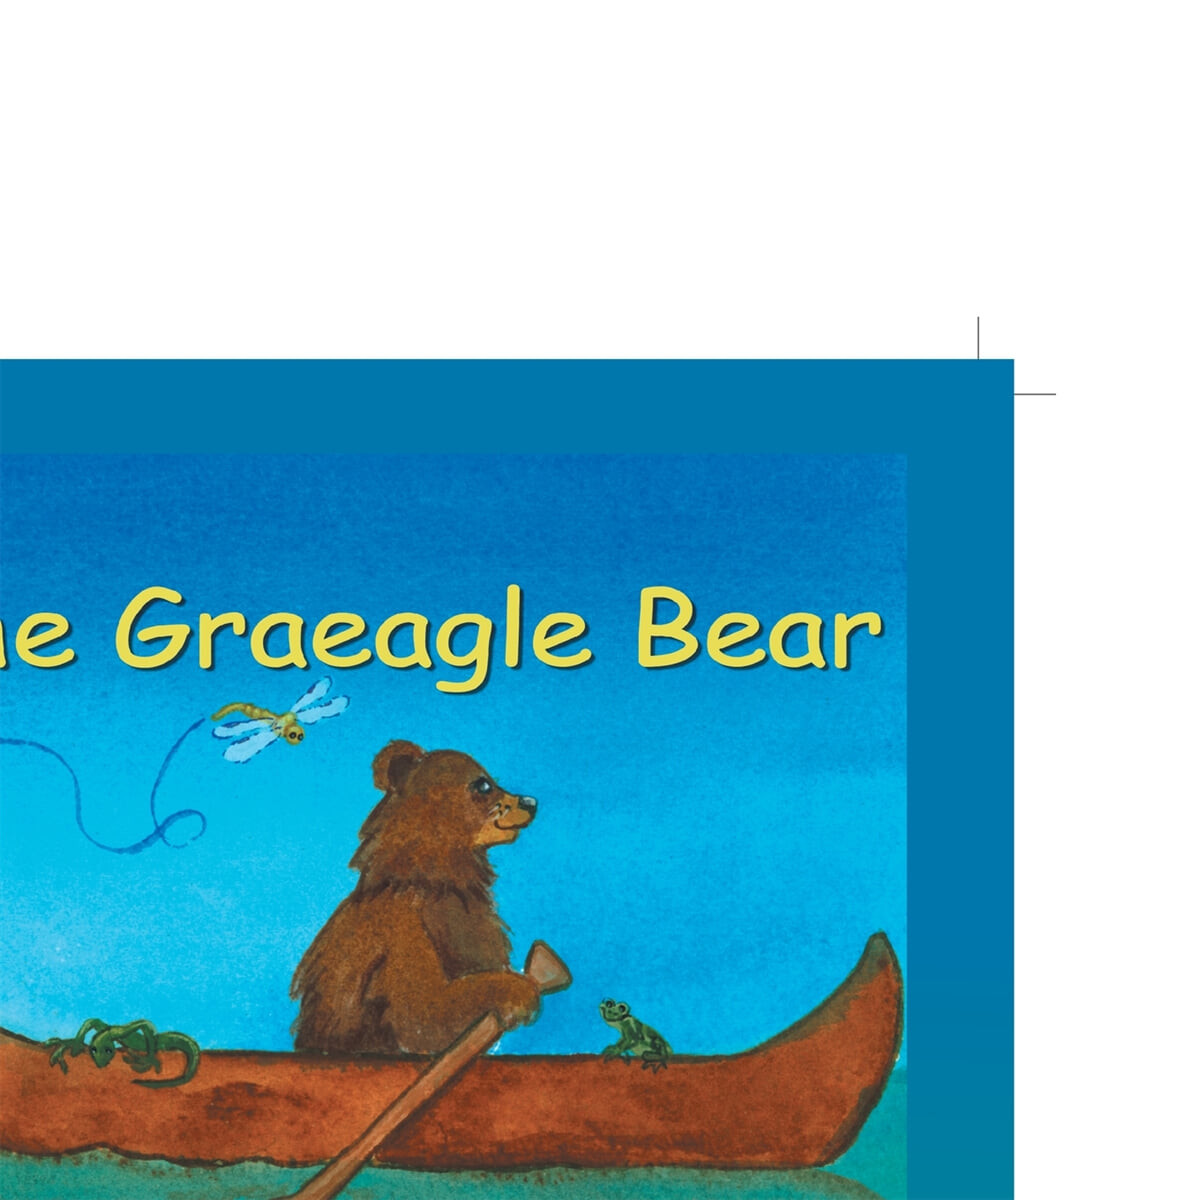 The Graeagle Bear